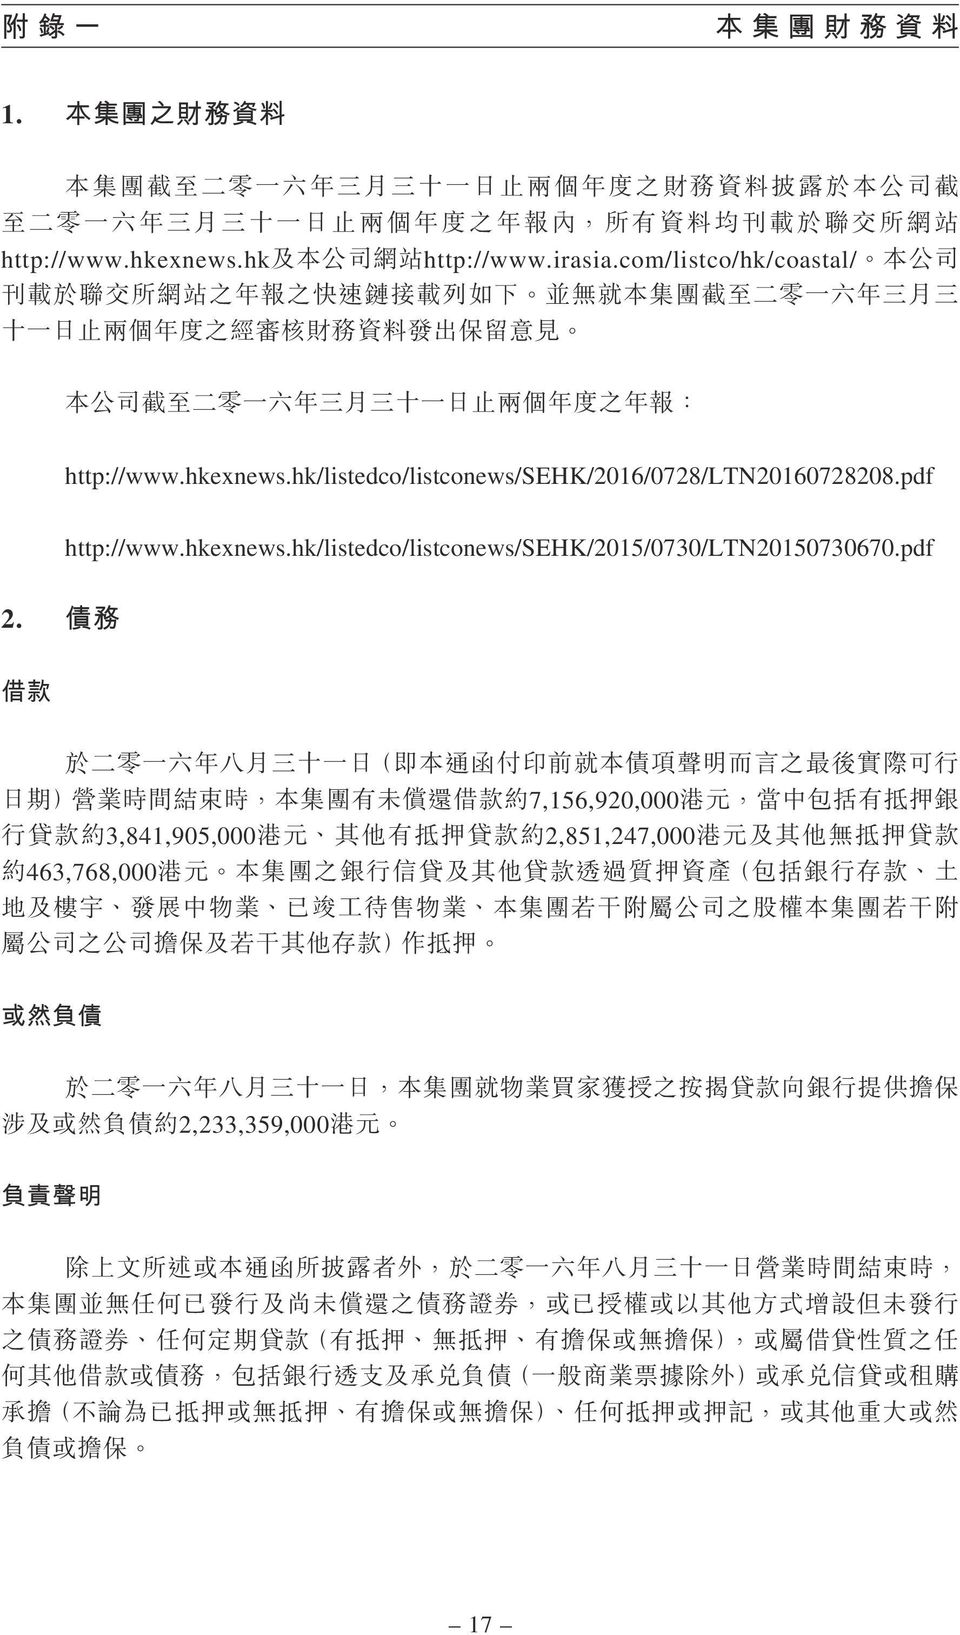 hk/listedco/listconews/sehk/2016/0728/ltn20160728208.pdf http://www.